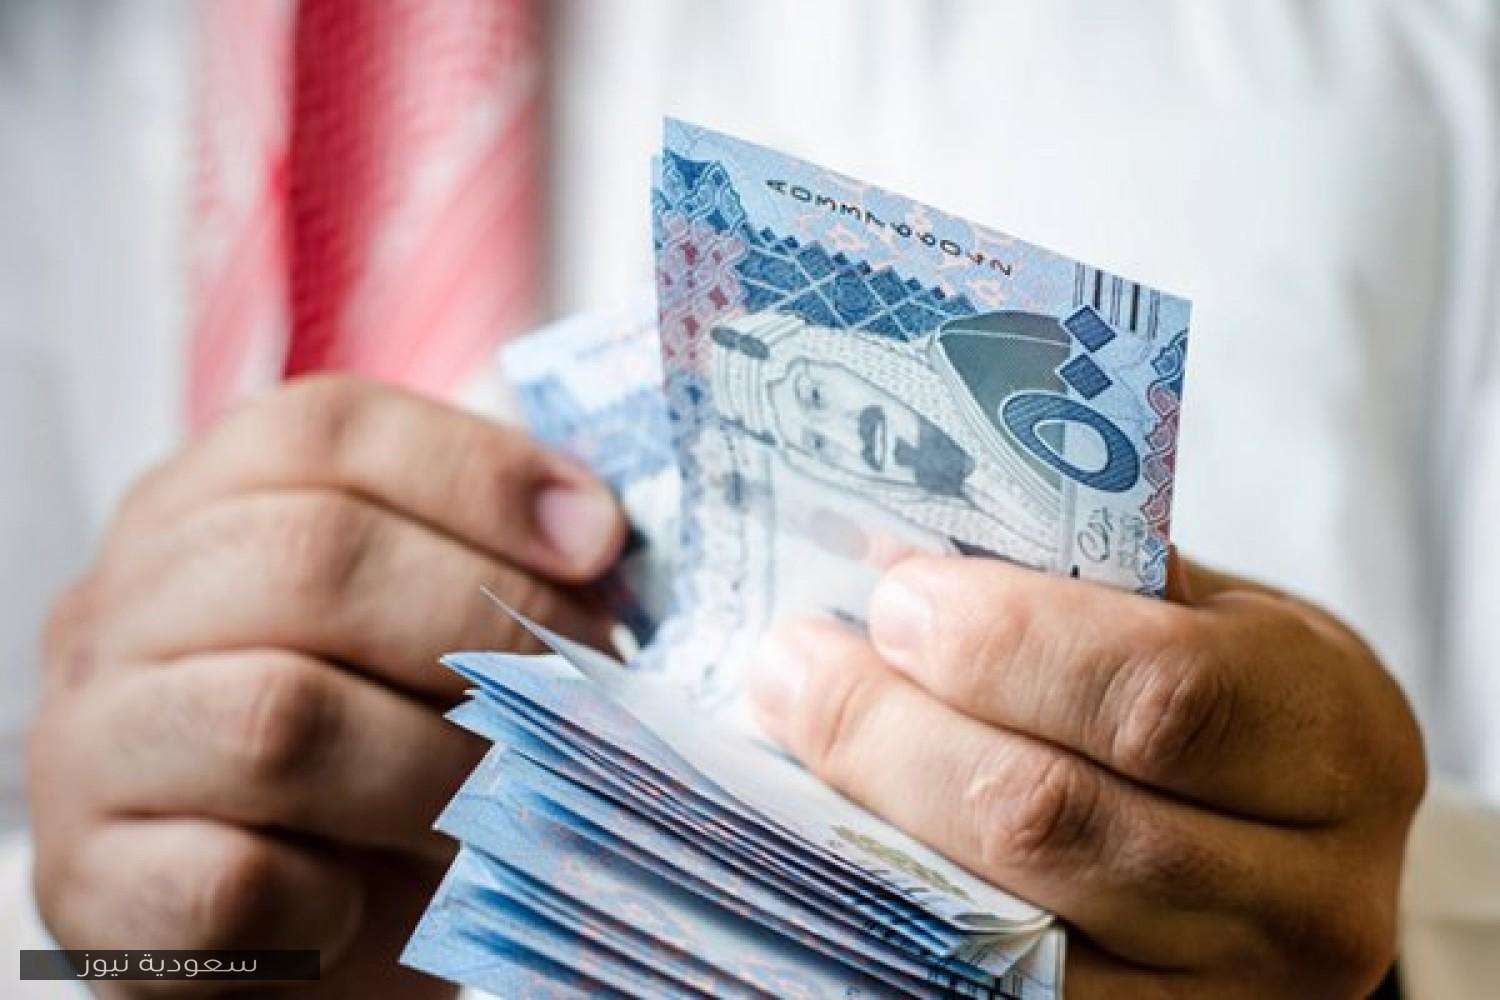 موعد صرف راتب متقاعدي التأمينات في السعودية ديسمبر 2020